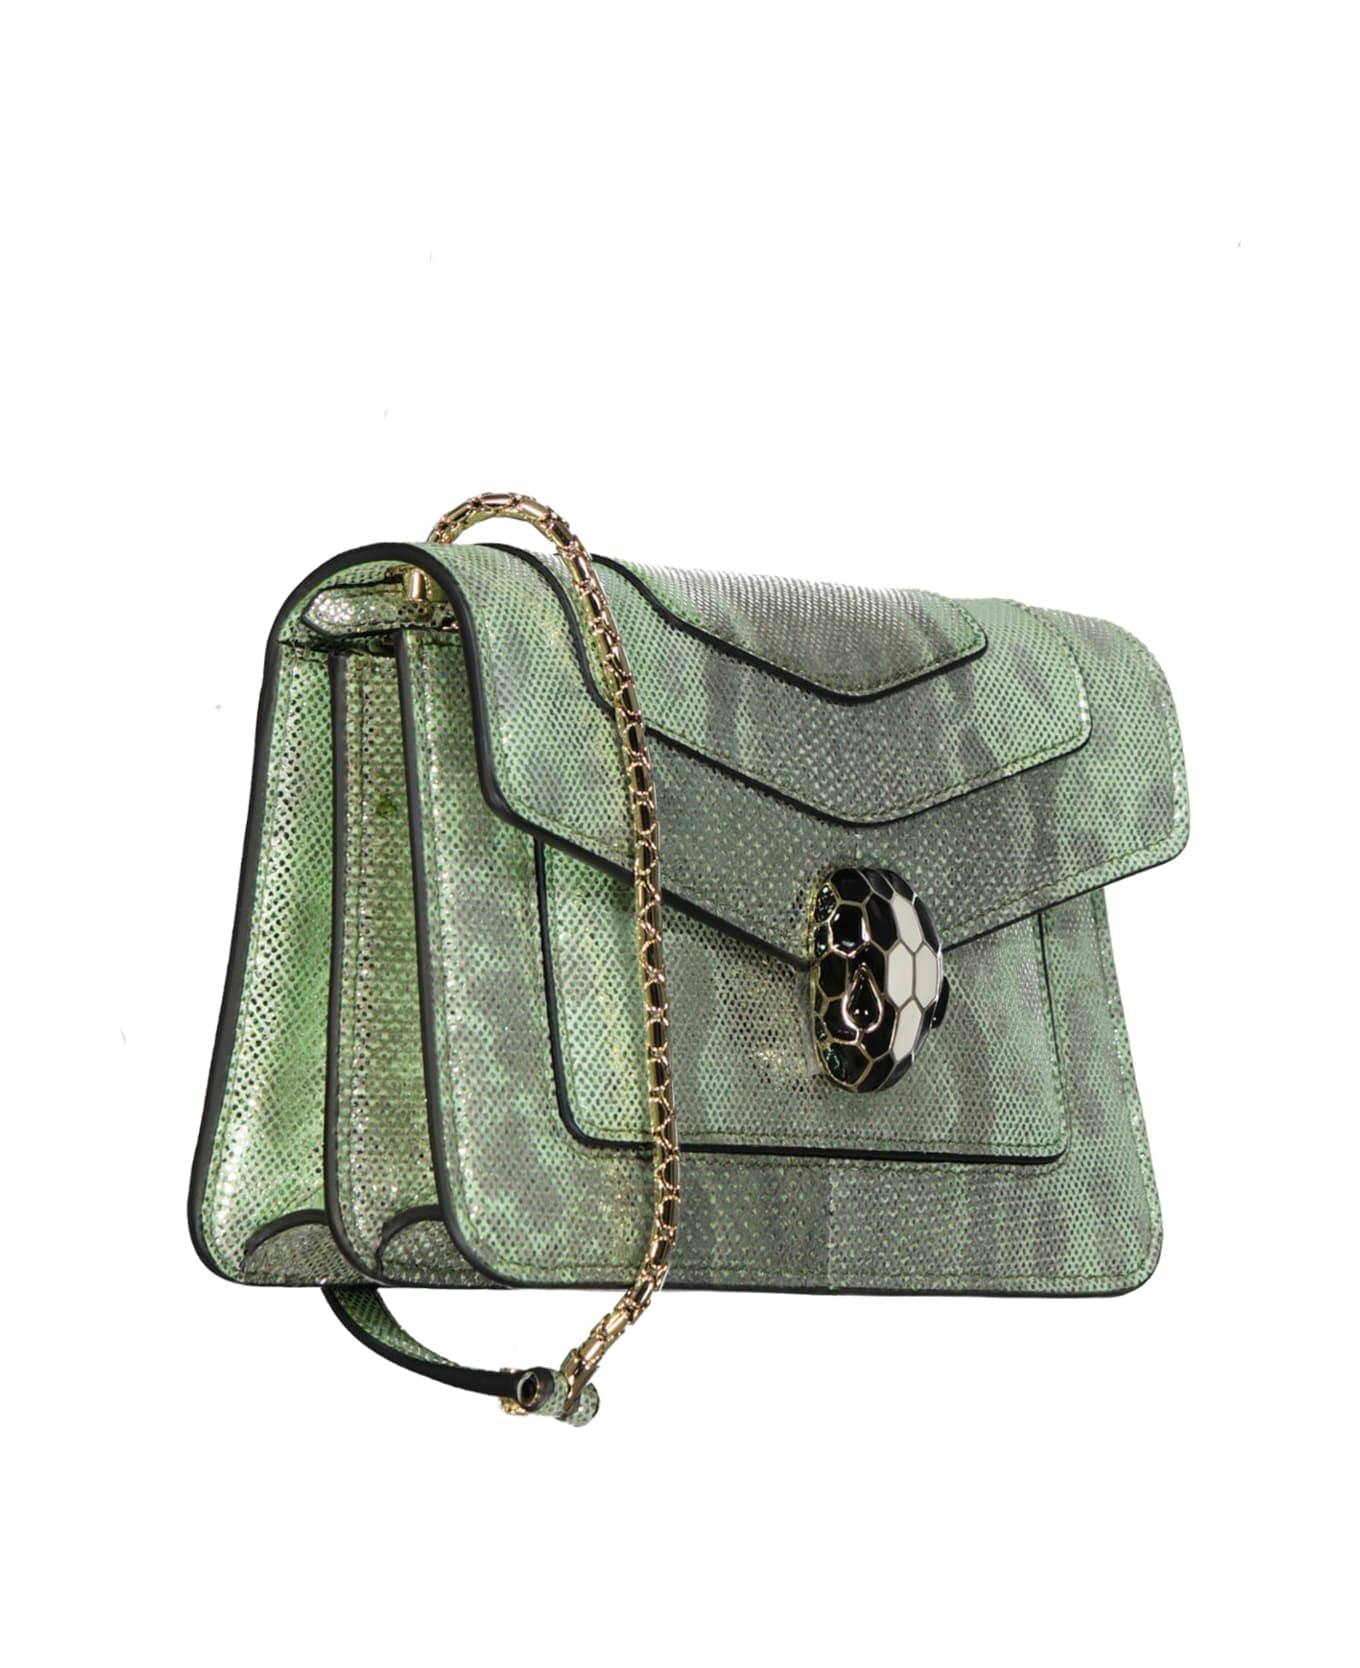 Bulgari Serpenti Forever Mini Bag - Green